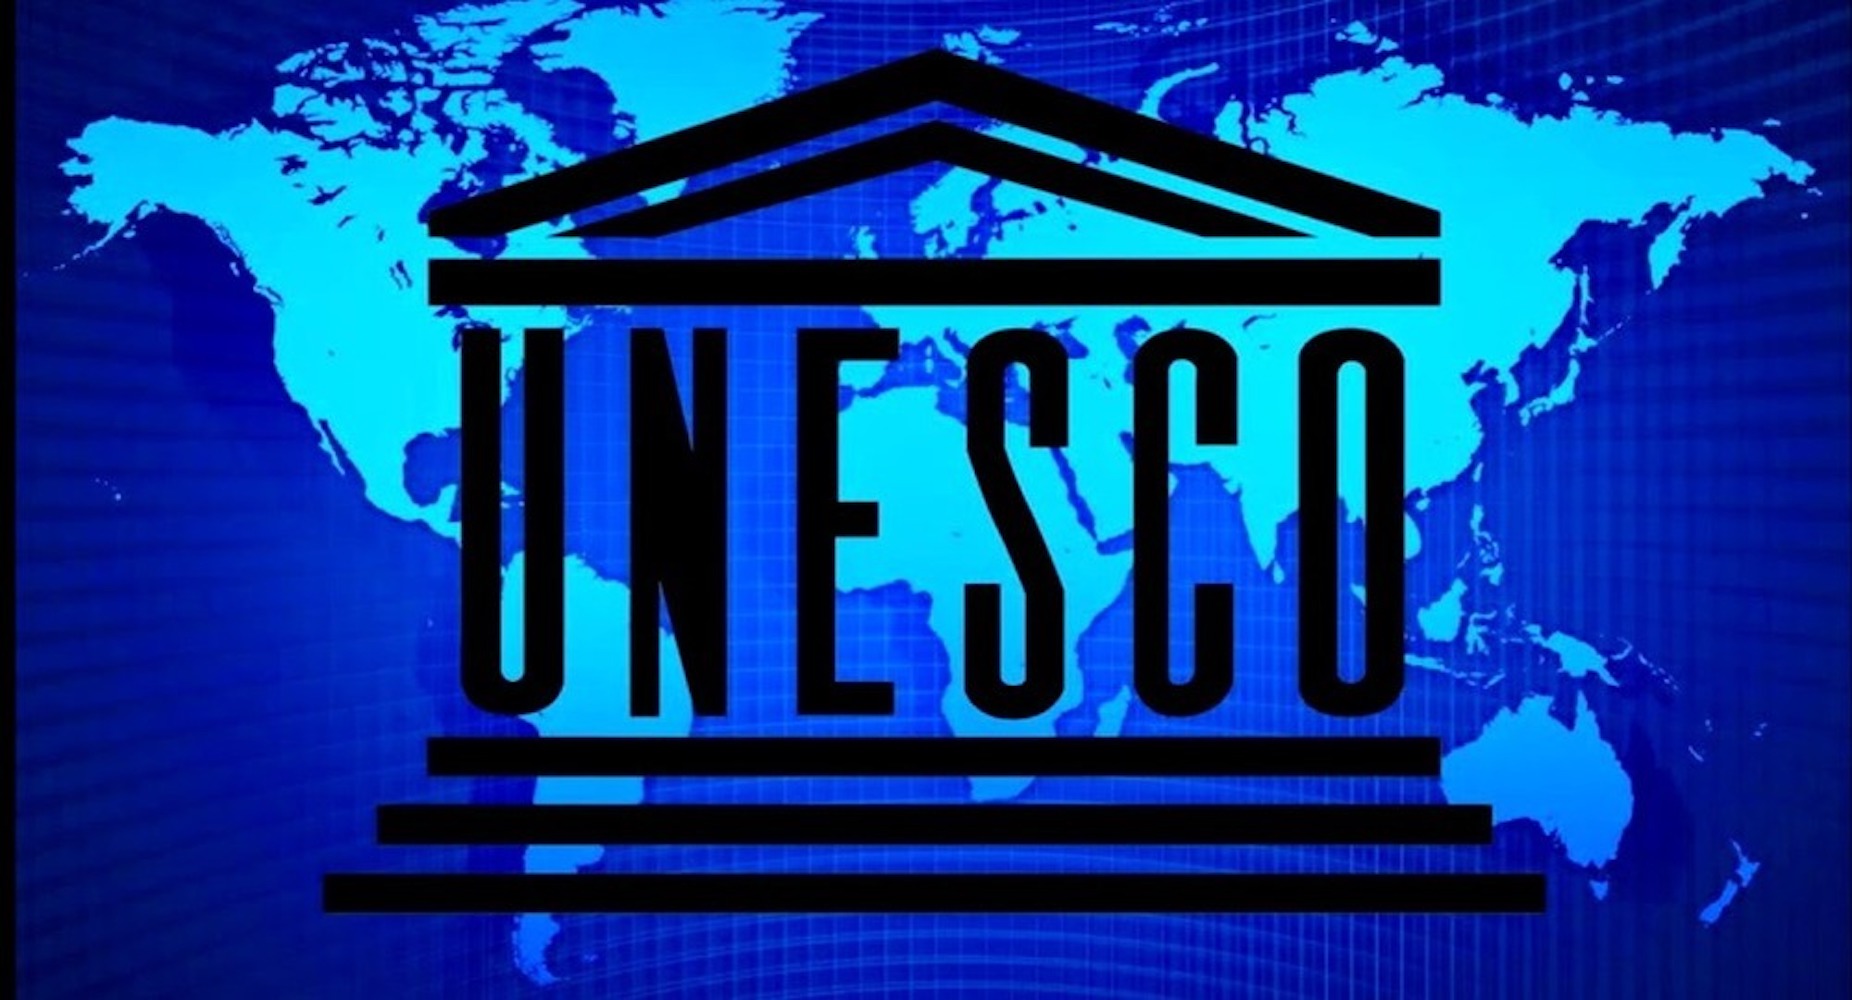 Unesco site. ООН по вопросам образования науки и культуры ЮНЕСКО. ЮНЕСКО эмблема. Организация ЮНЕСКО. Логотип организации ЮНЕСКО.